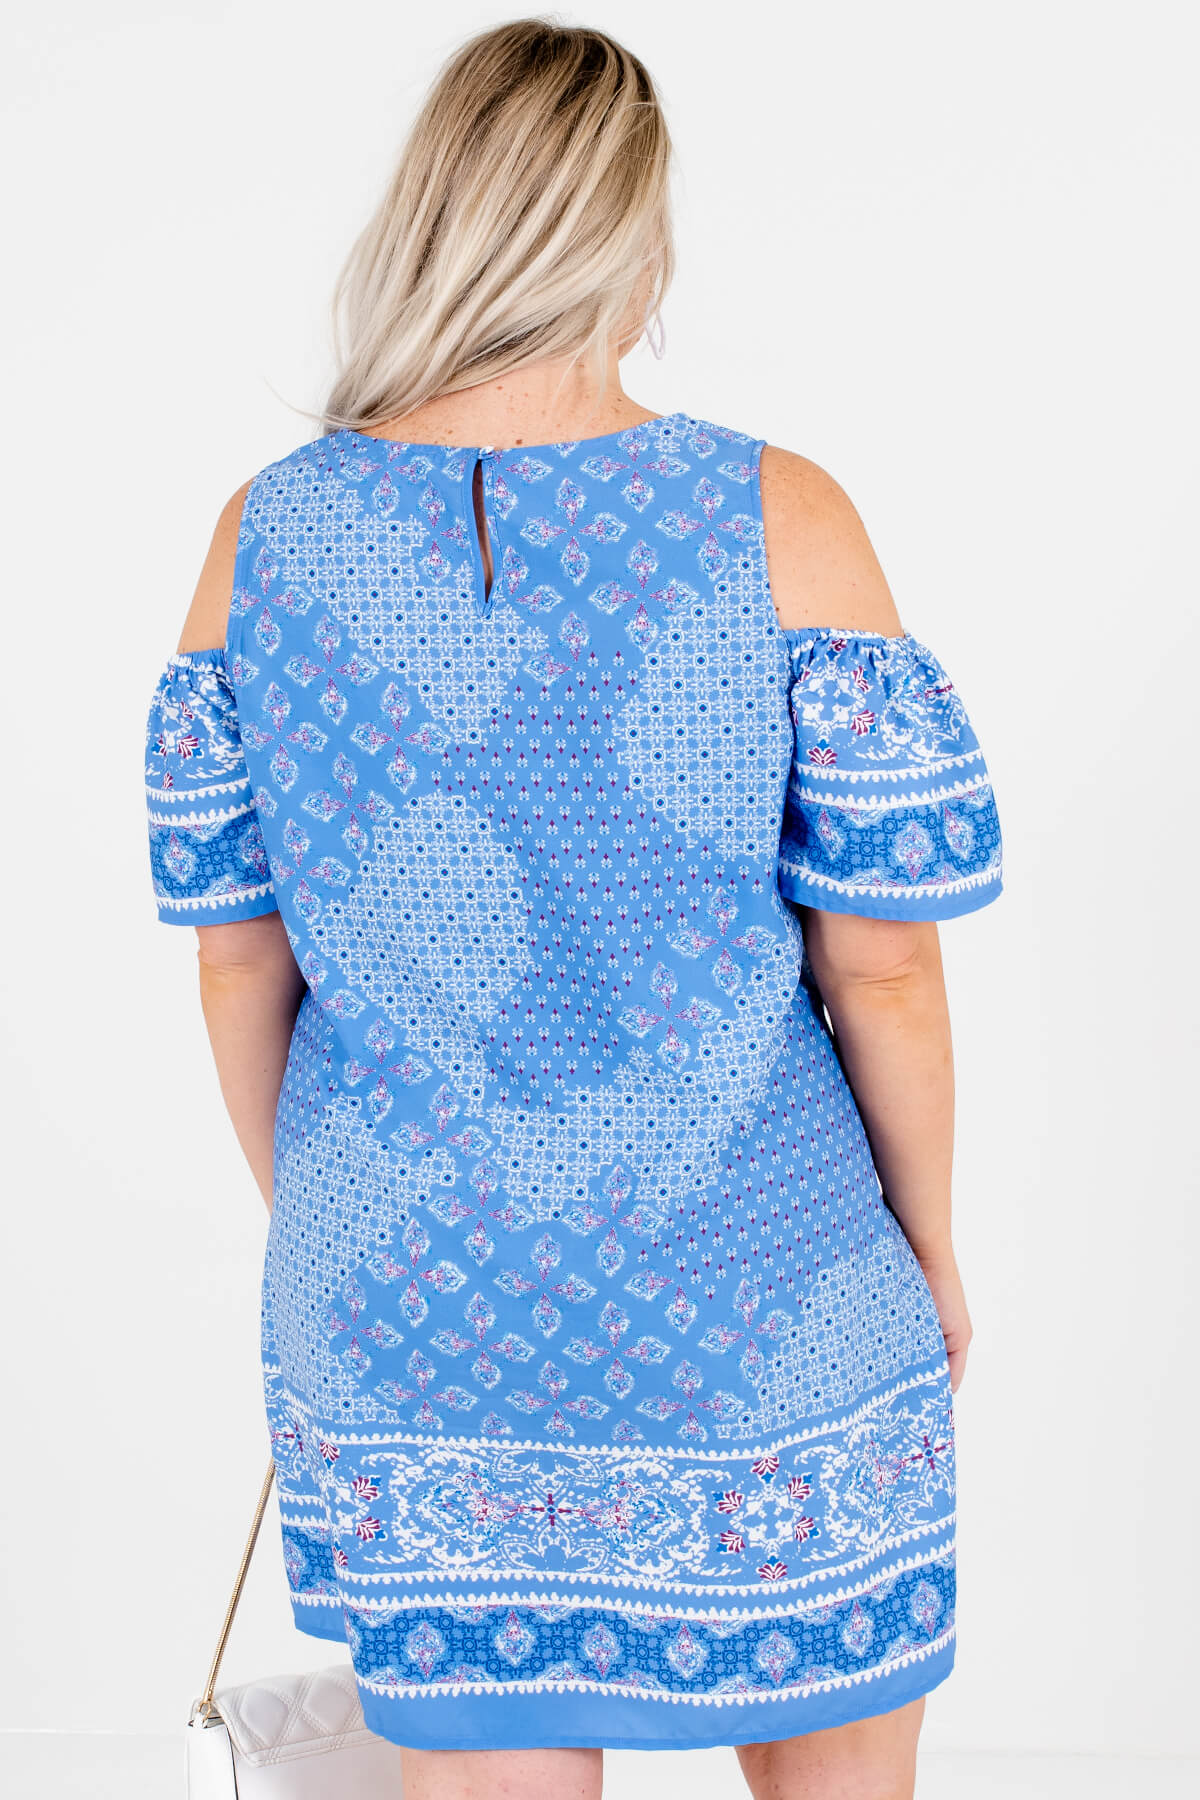 Blue Abstract Print Cold Shoulder Mini Dresses Plus Size Boutique